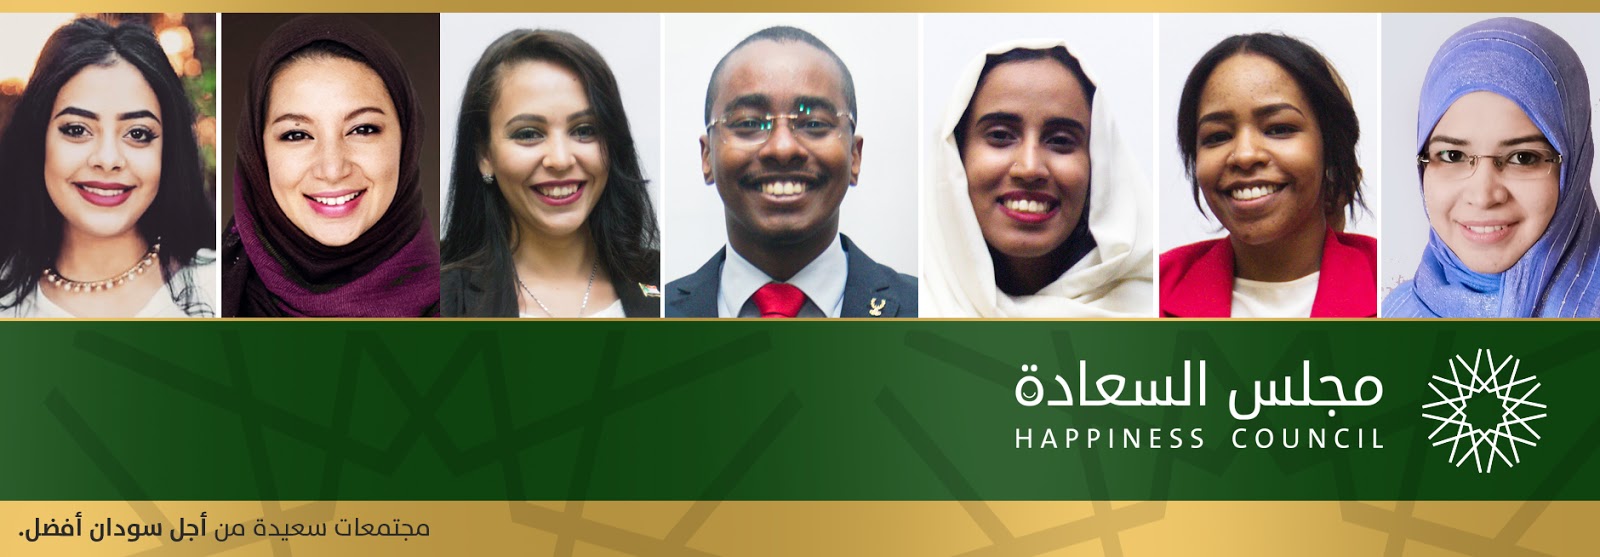 مجلس السعادة - السودان